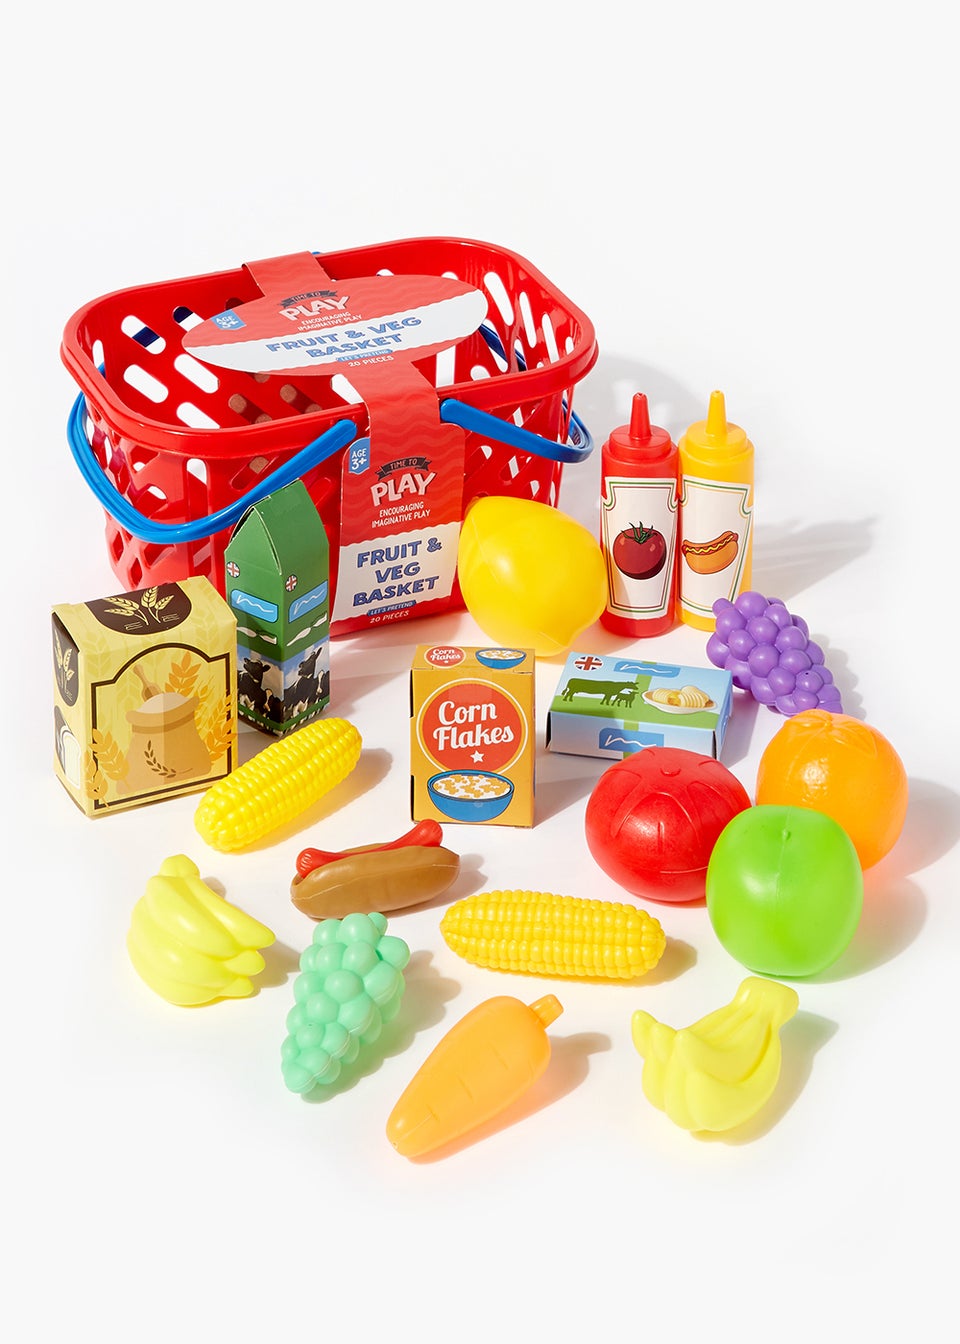 Shopping Basket & Food Play Set